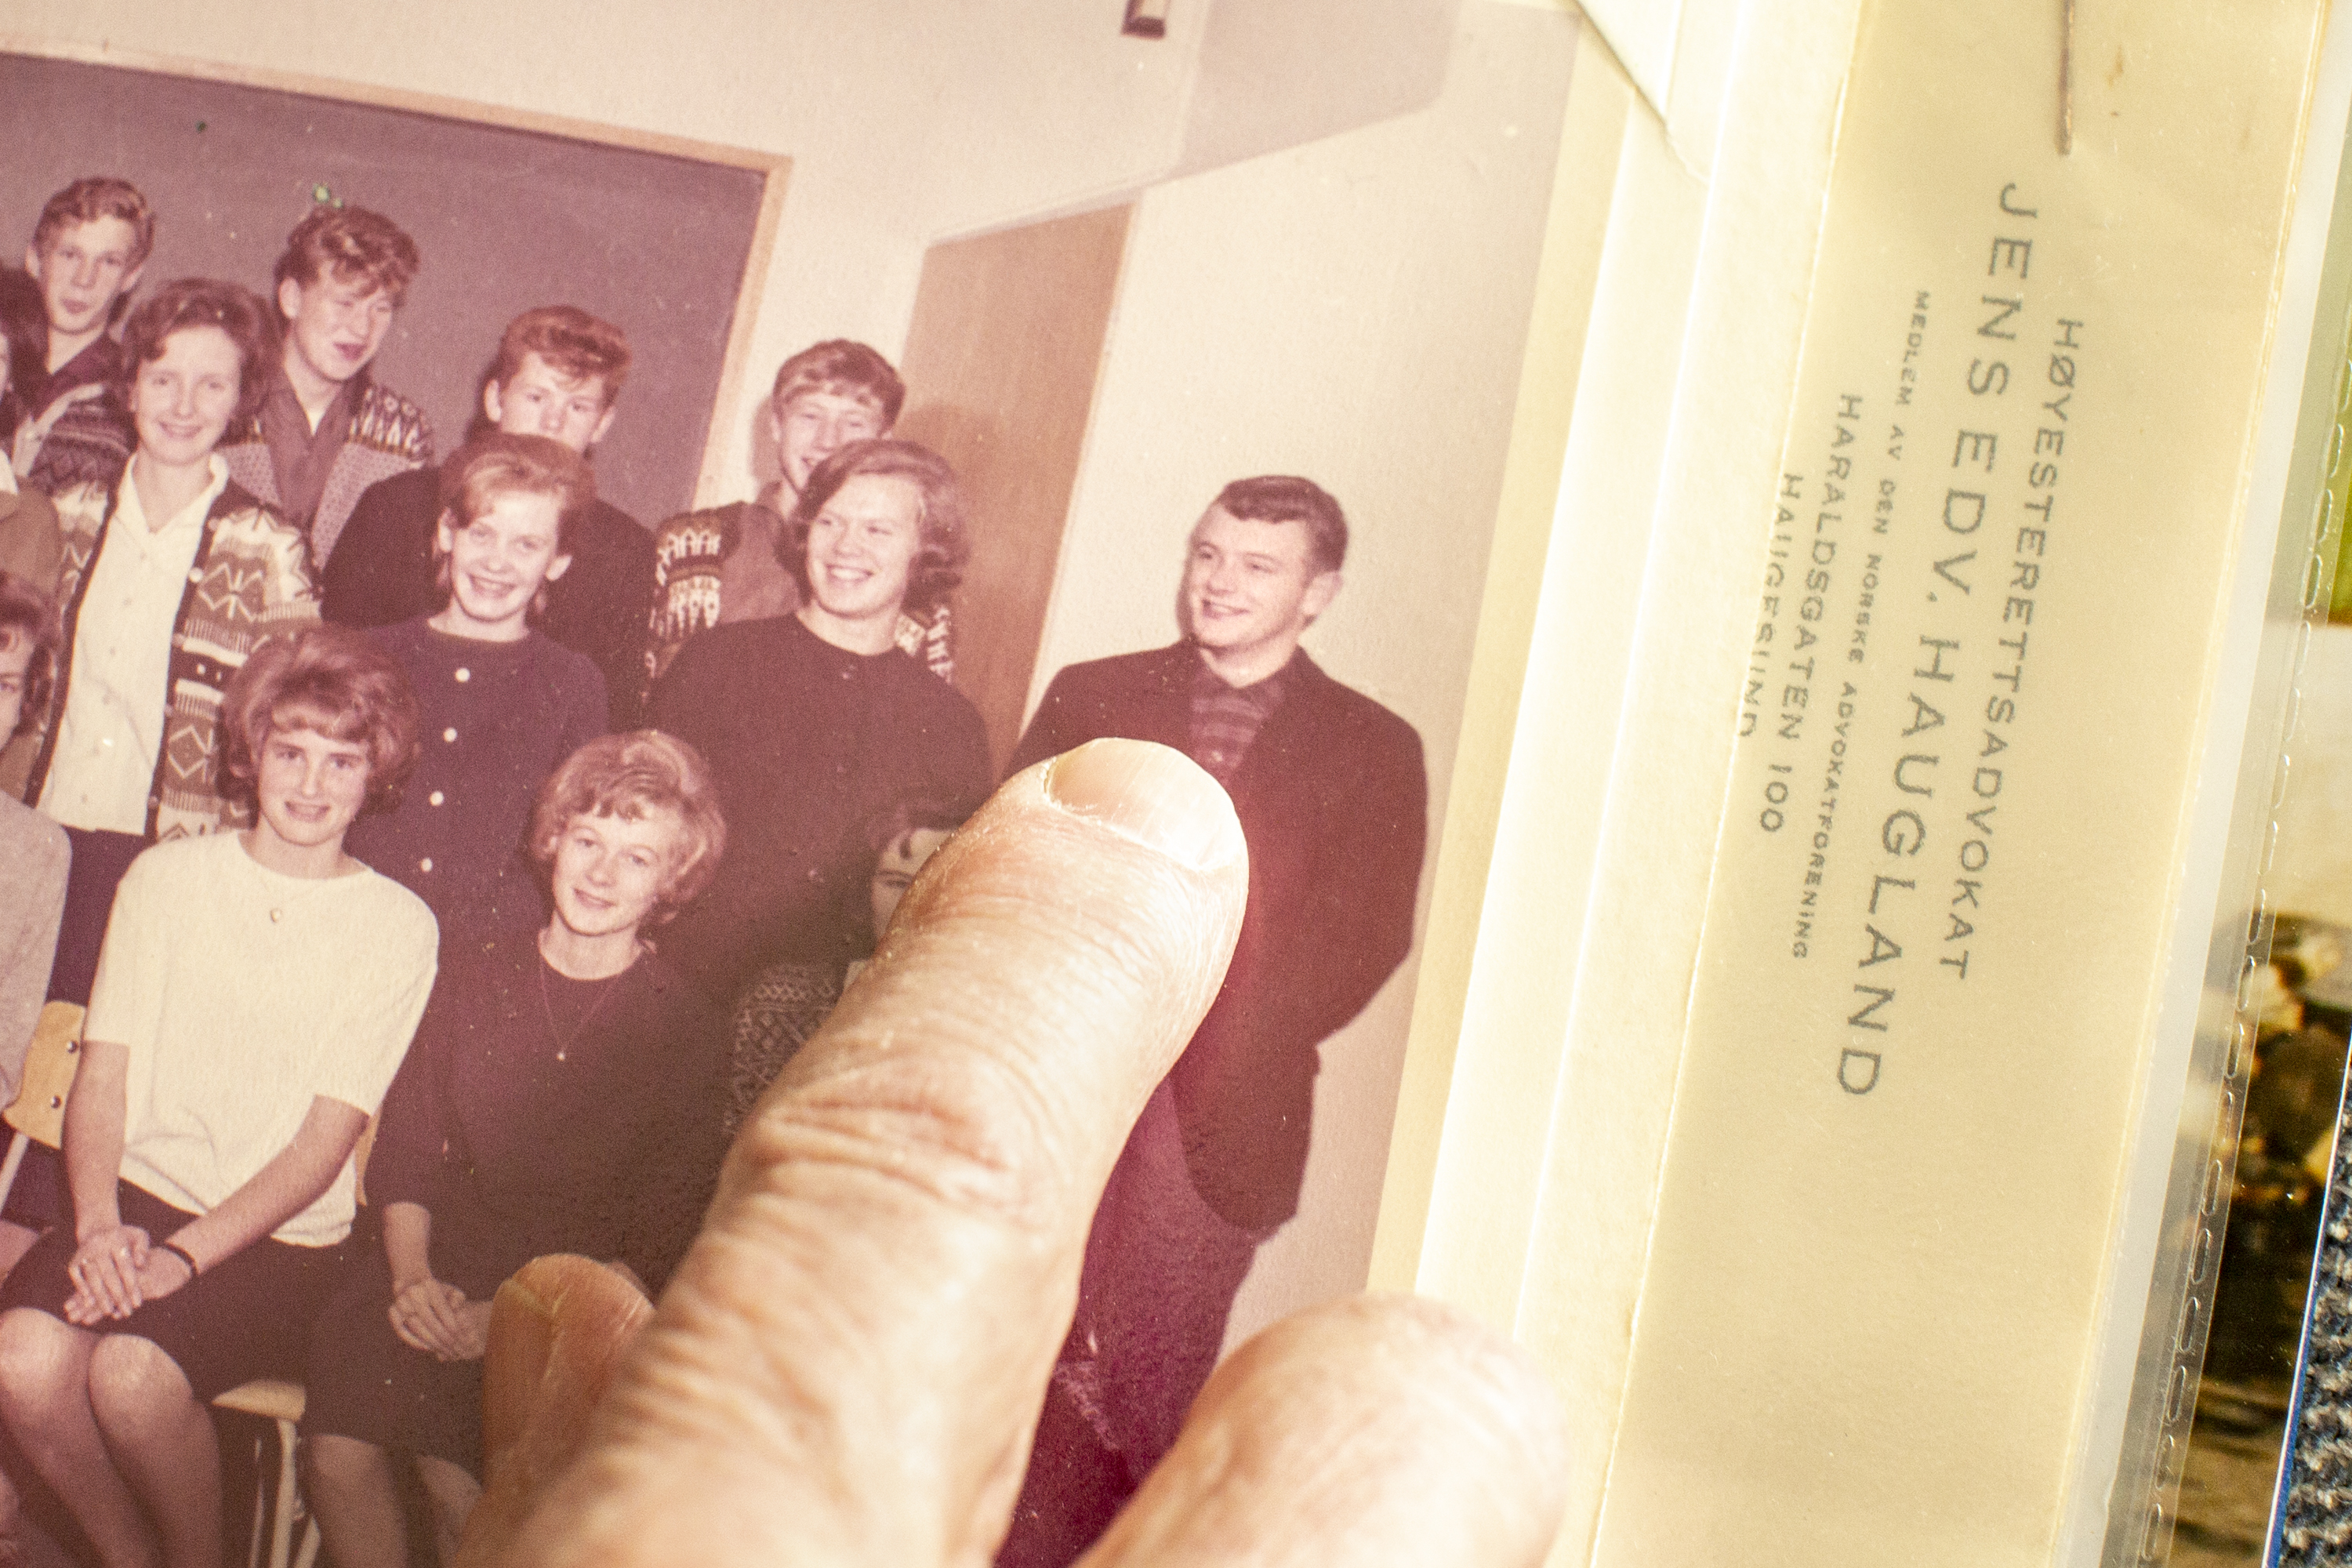 22.03.22 Kolbotn, Norge. Sigmund Jakobsen fotografert i hjemmet sitt ifb. med at han ble den første vinneren av Tarjei Vesaas' debutantpris i 1964, men ga ikke ut mer siden